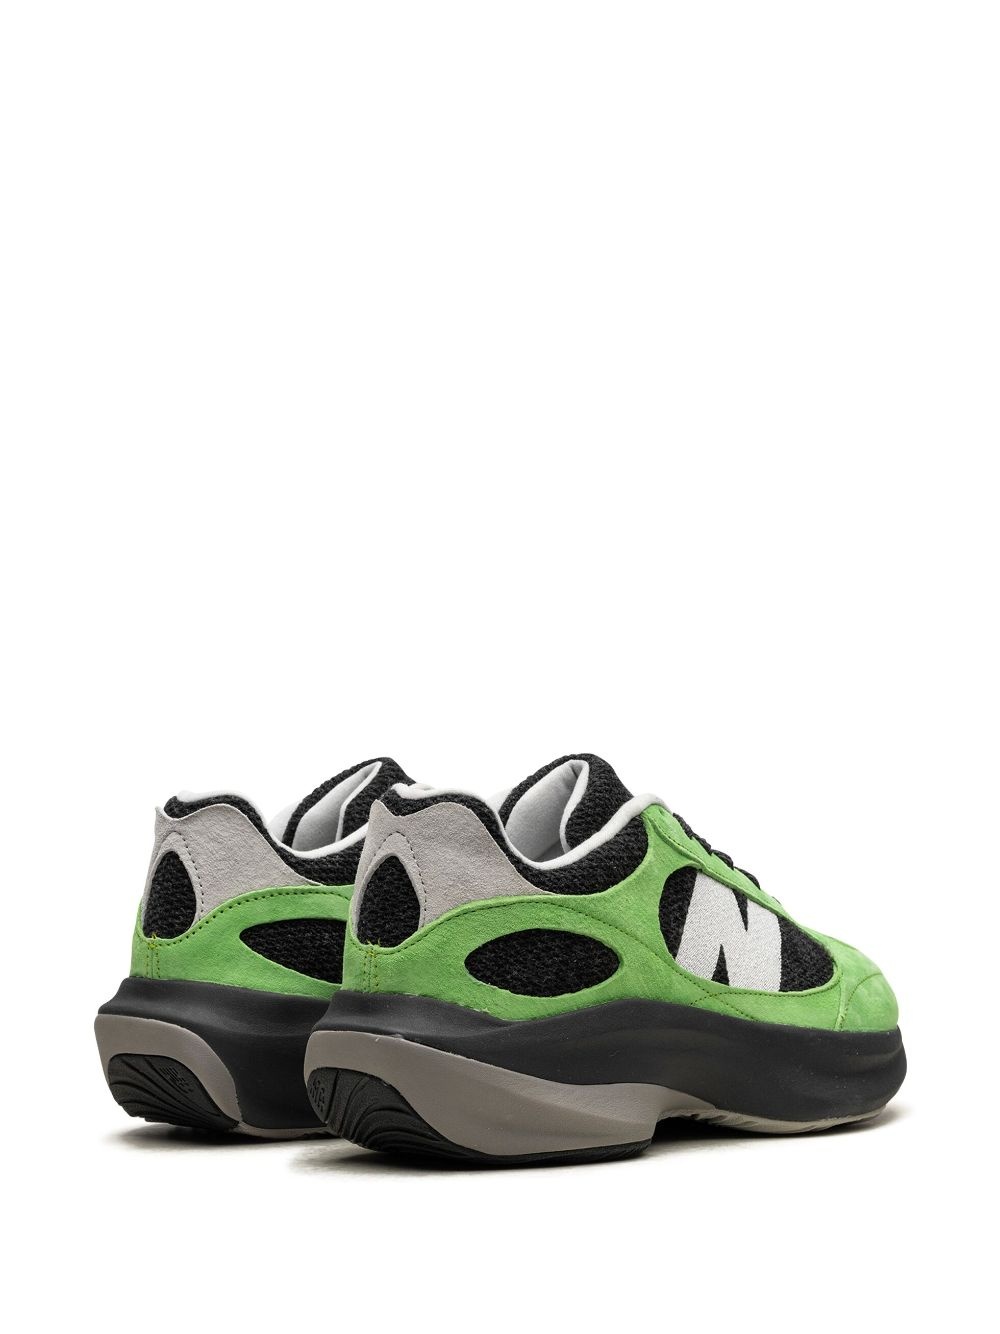 WRPD Runner "Green/Black" sneakers - 3